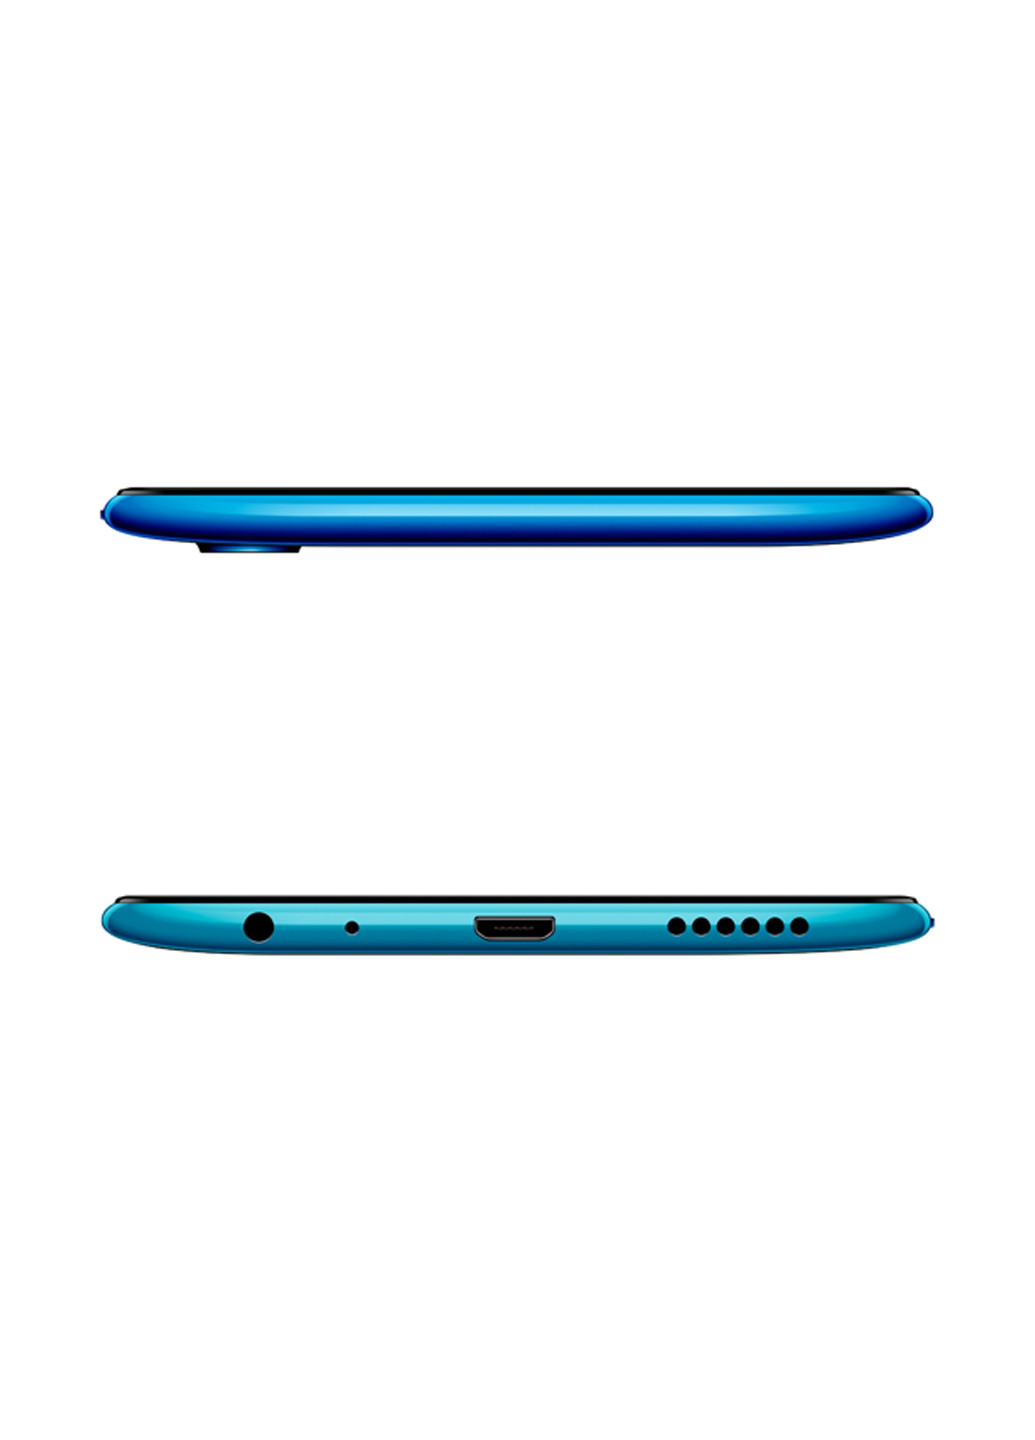 Смартфон Y93 lite 3 / 32GB Ocean Blue Vivo y93 lite 3/32gb ocean blue (137494210)